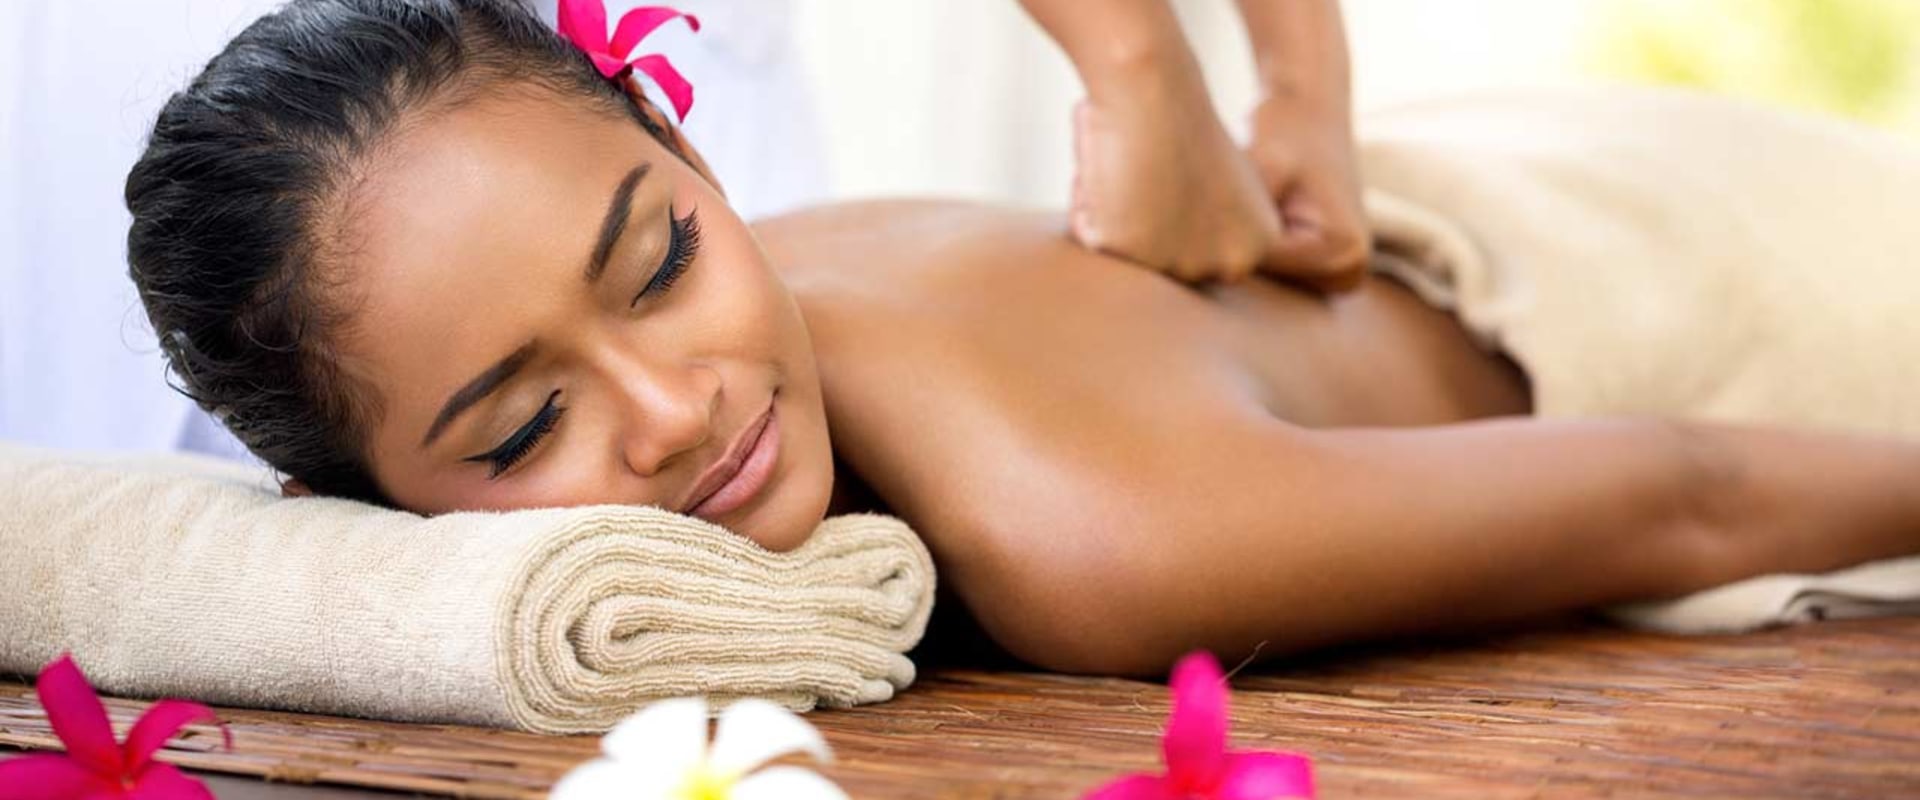 Was bewirkt die thailändische massage in ihrem körper?